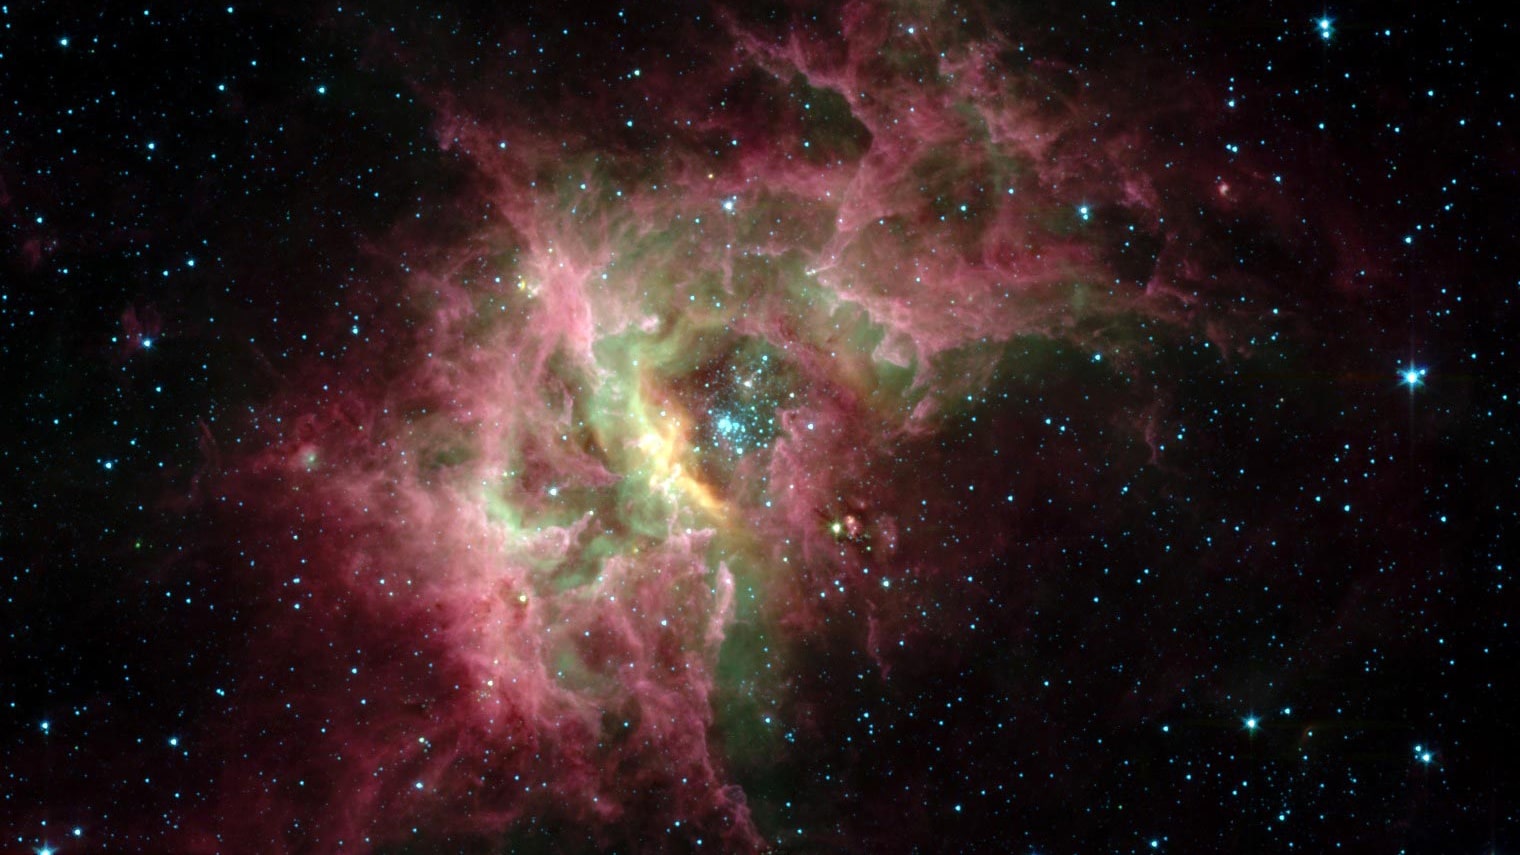 Астрономы получили первое четкое изображение «кипящего котла», где формируются новые звезды